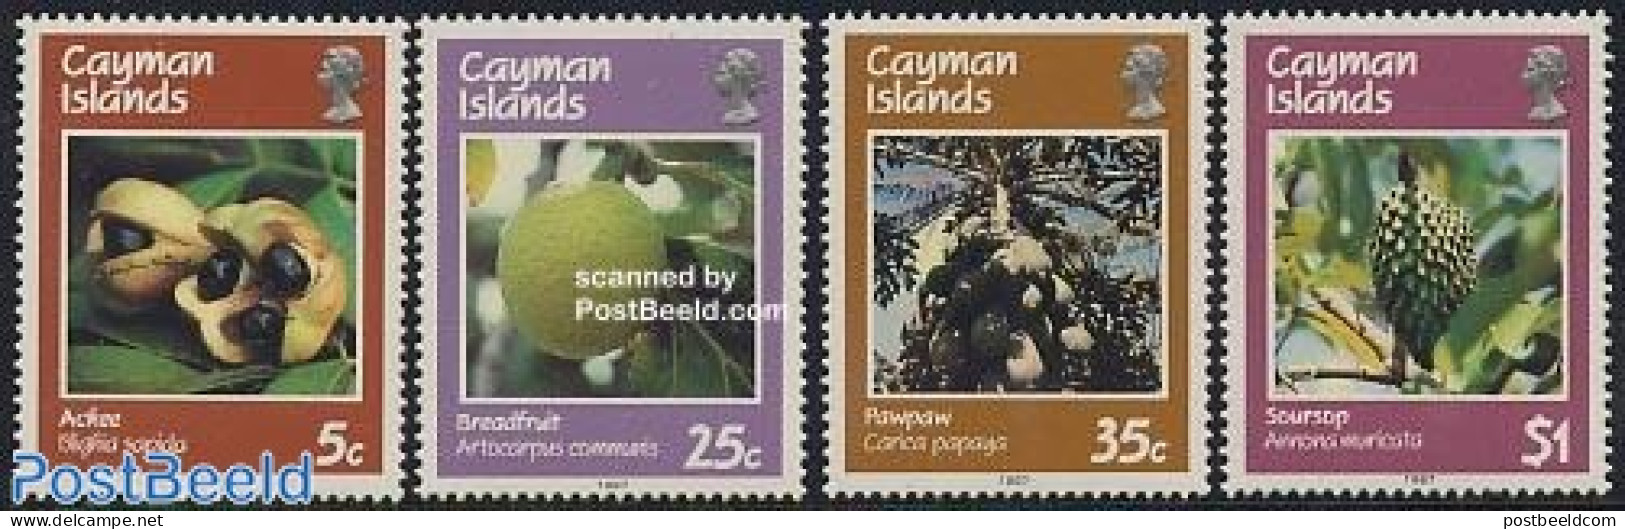 Cayman Islands 1987 Fruits 4v, Mint NH, Nature - Fruit - Obst & Früchte